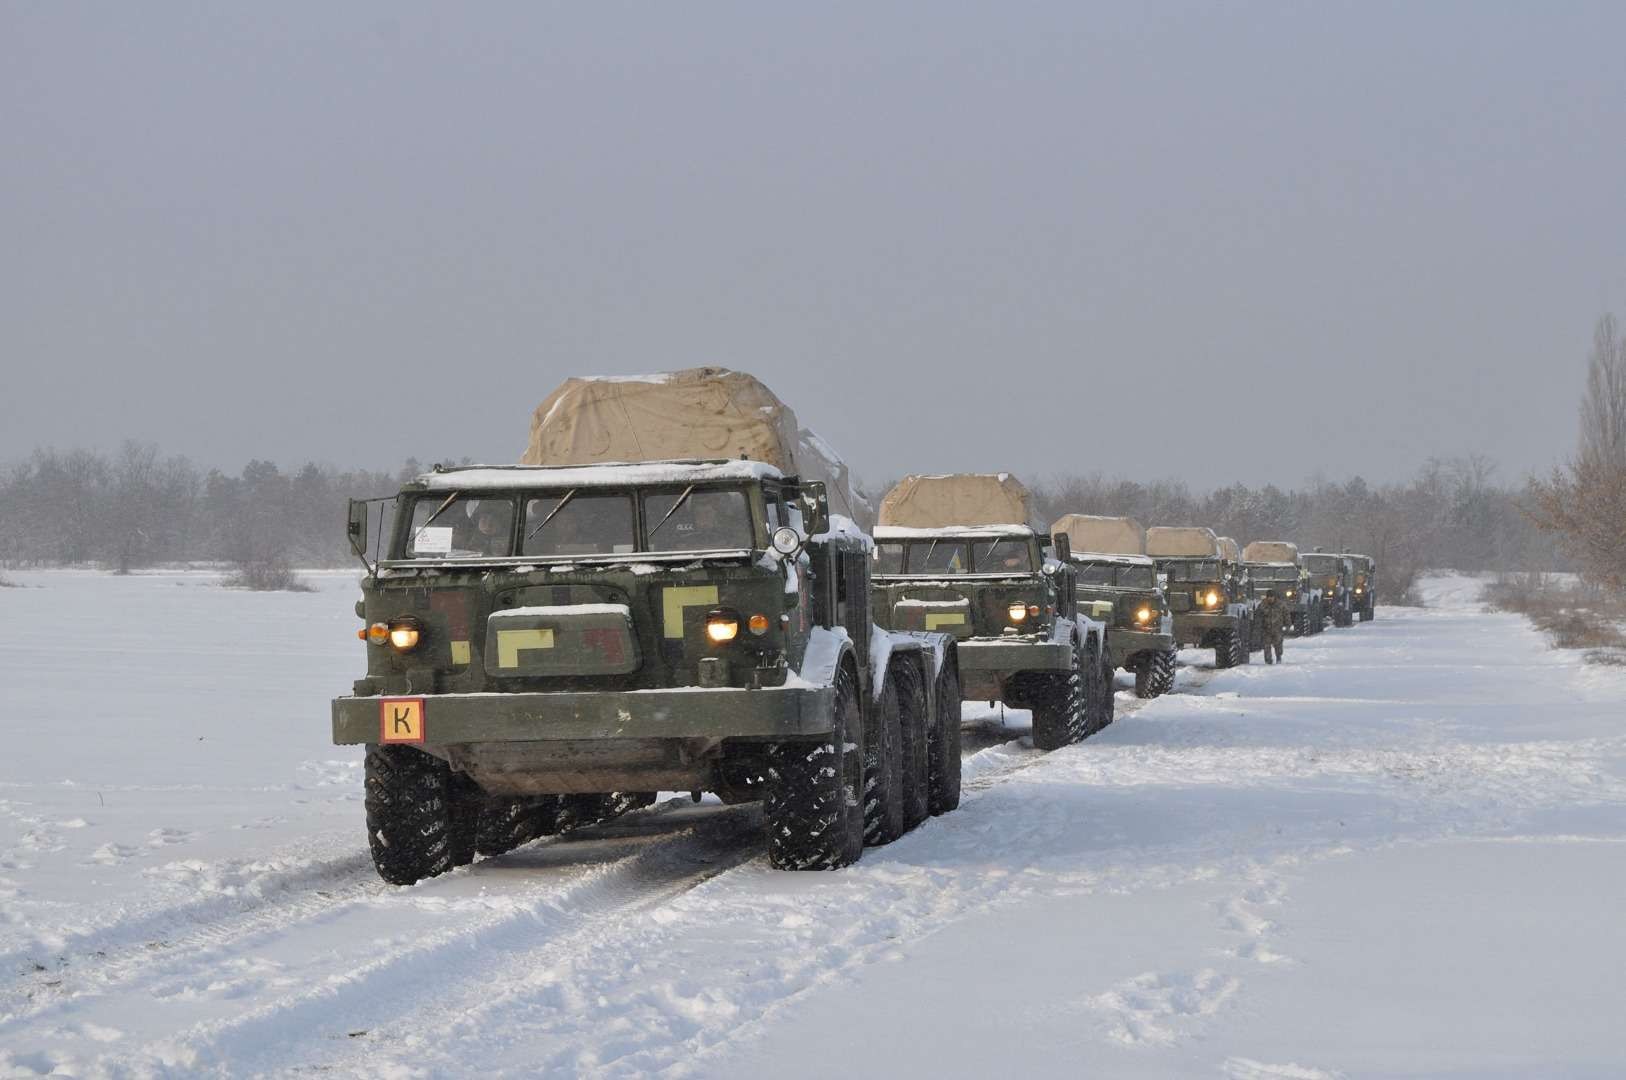 Krisis Ukraina semakin runyam. Keadaan penuh aktivitas militer, Tentara Angkatan Bersenjata Ukraina mengendarai kendaraan peluncur roket otomatis saat berlatih di wilayah Kherson, Ukraina, dalam foto handout yang dirilis pada Selasa 1 Februari 2022. (Foto: Reuters)